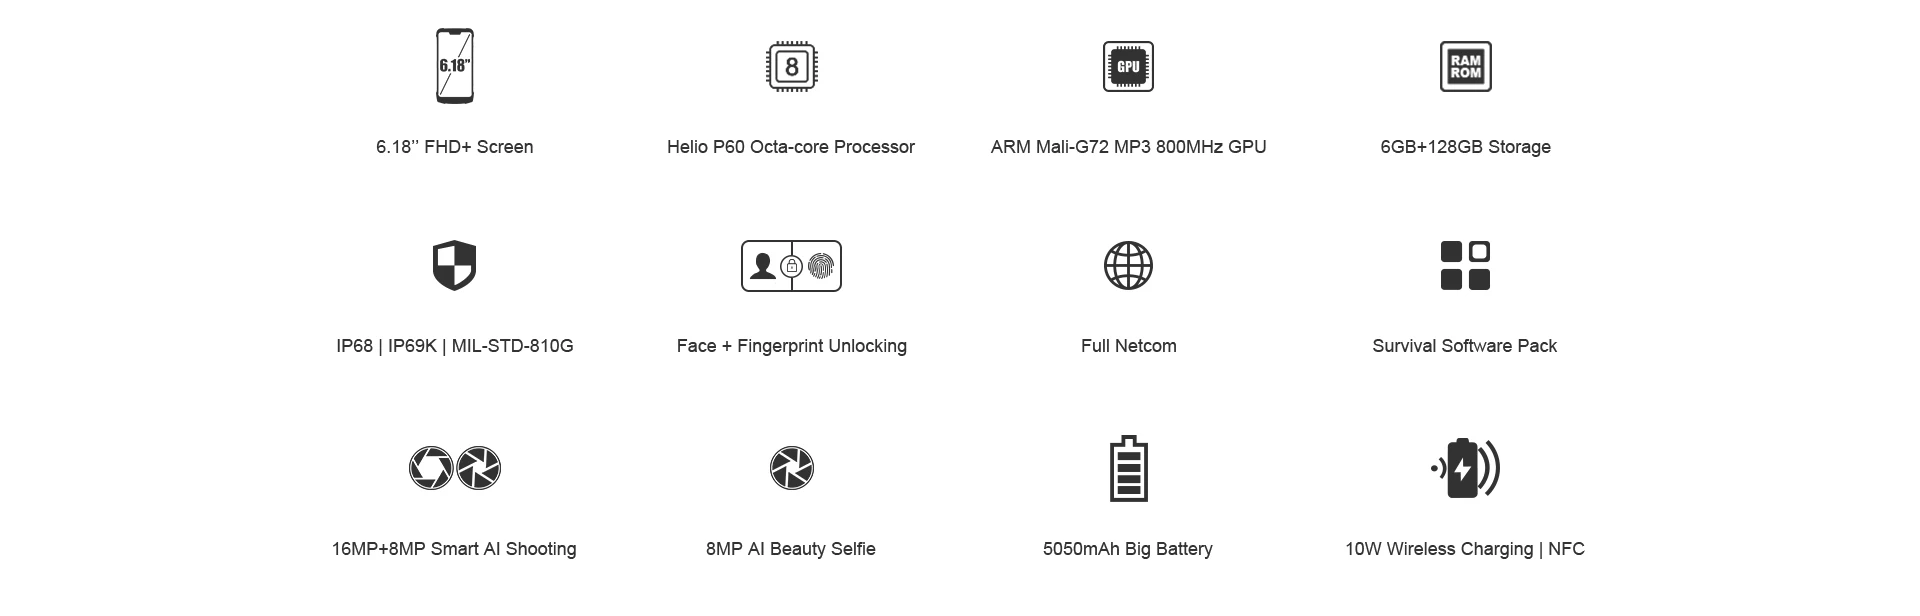 DOOGEE S90 супер коробка прочный мобильный телефон 6,18 дюймов смартфон IP68/IP69K Helio P60 Восьмиядерный 6 ГБ 128 ГБ 3 дополнительный модуль мобильного телефона